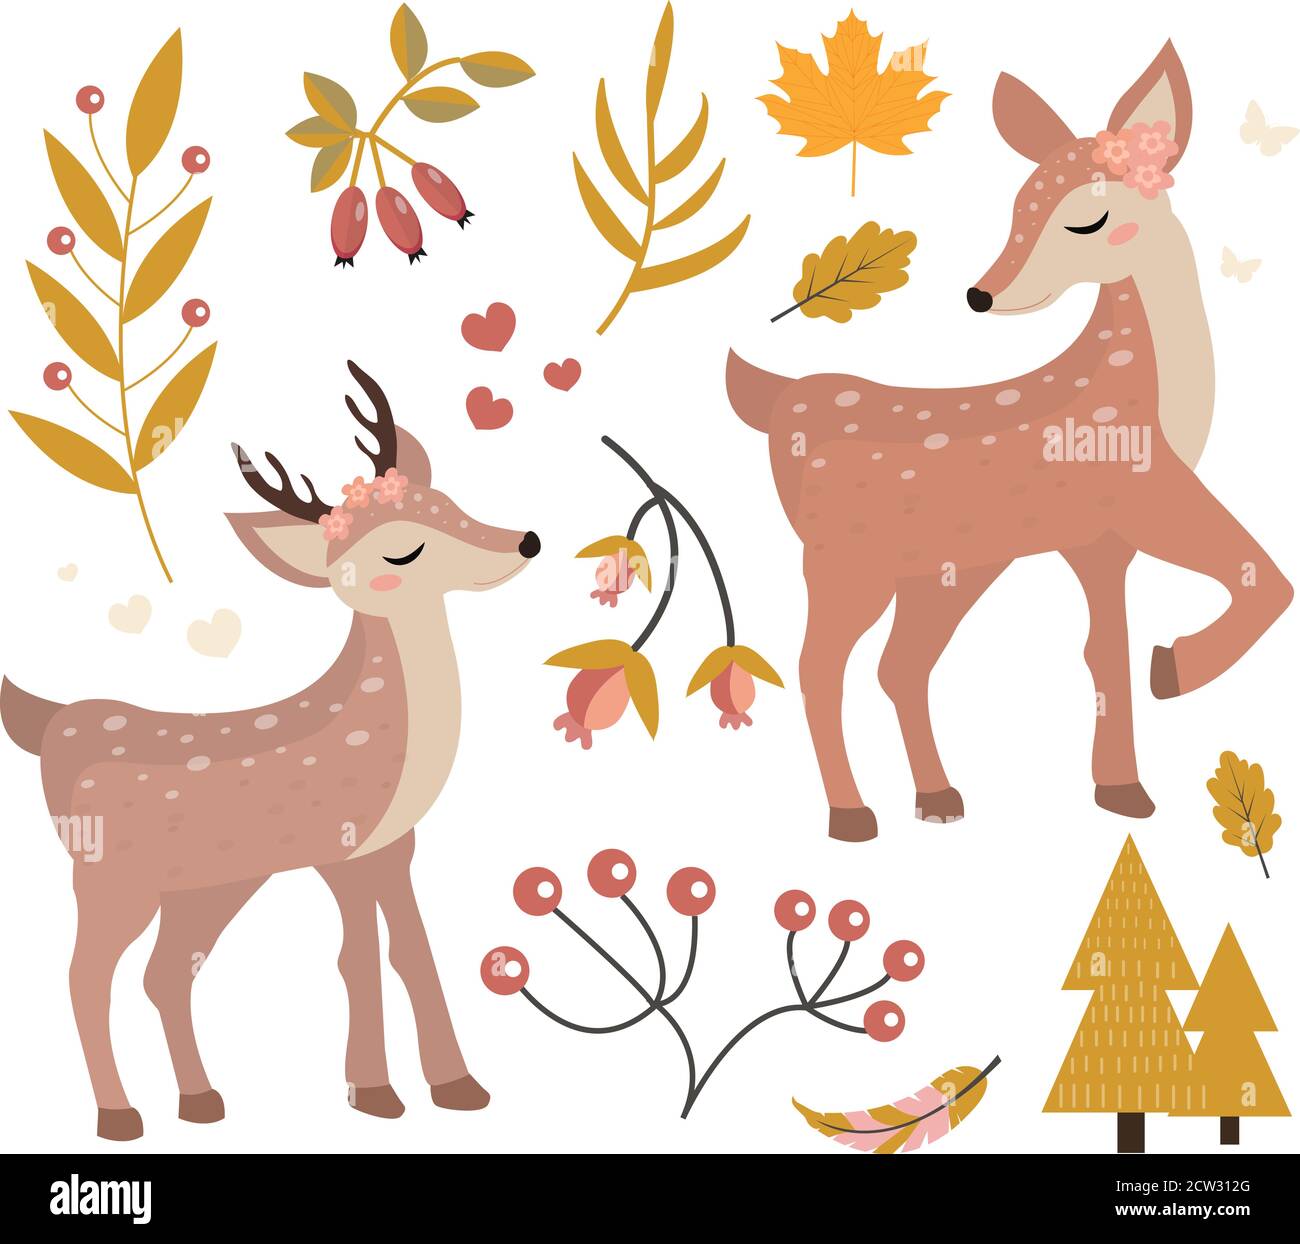 Carino pegno nella foresta di autunno insieme di oggetti. Collezione di elementi di design con cervi, piante autunnali, fiori. Bambini clip art divertente Illustrazione Vettoriale